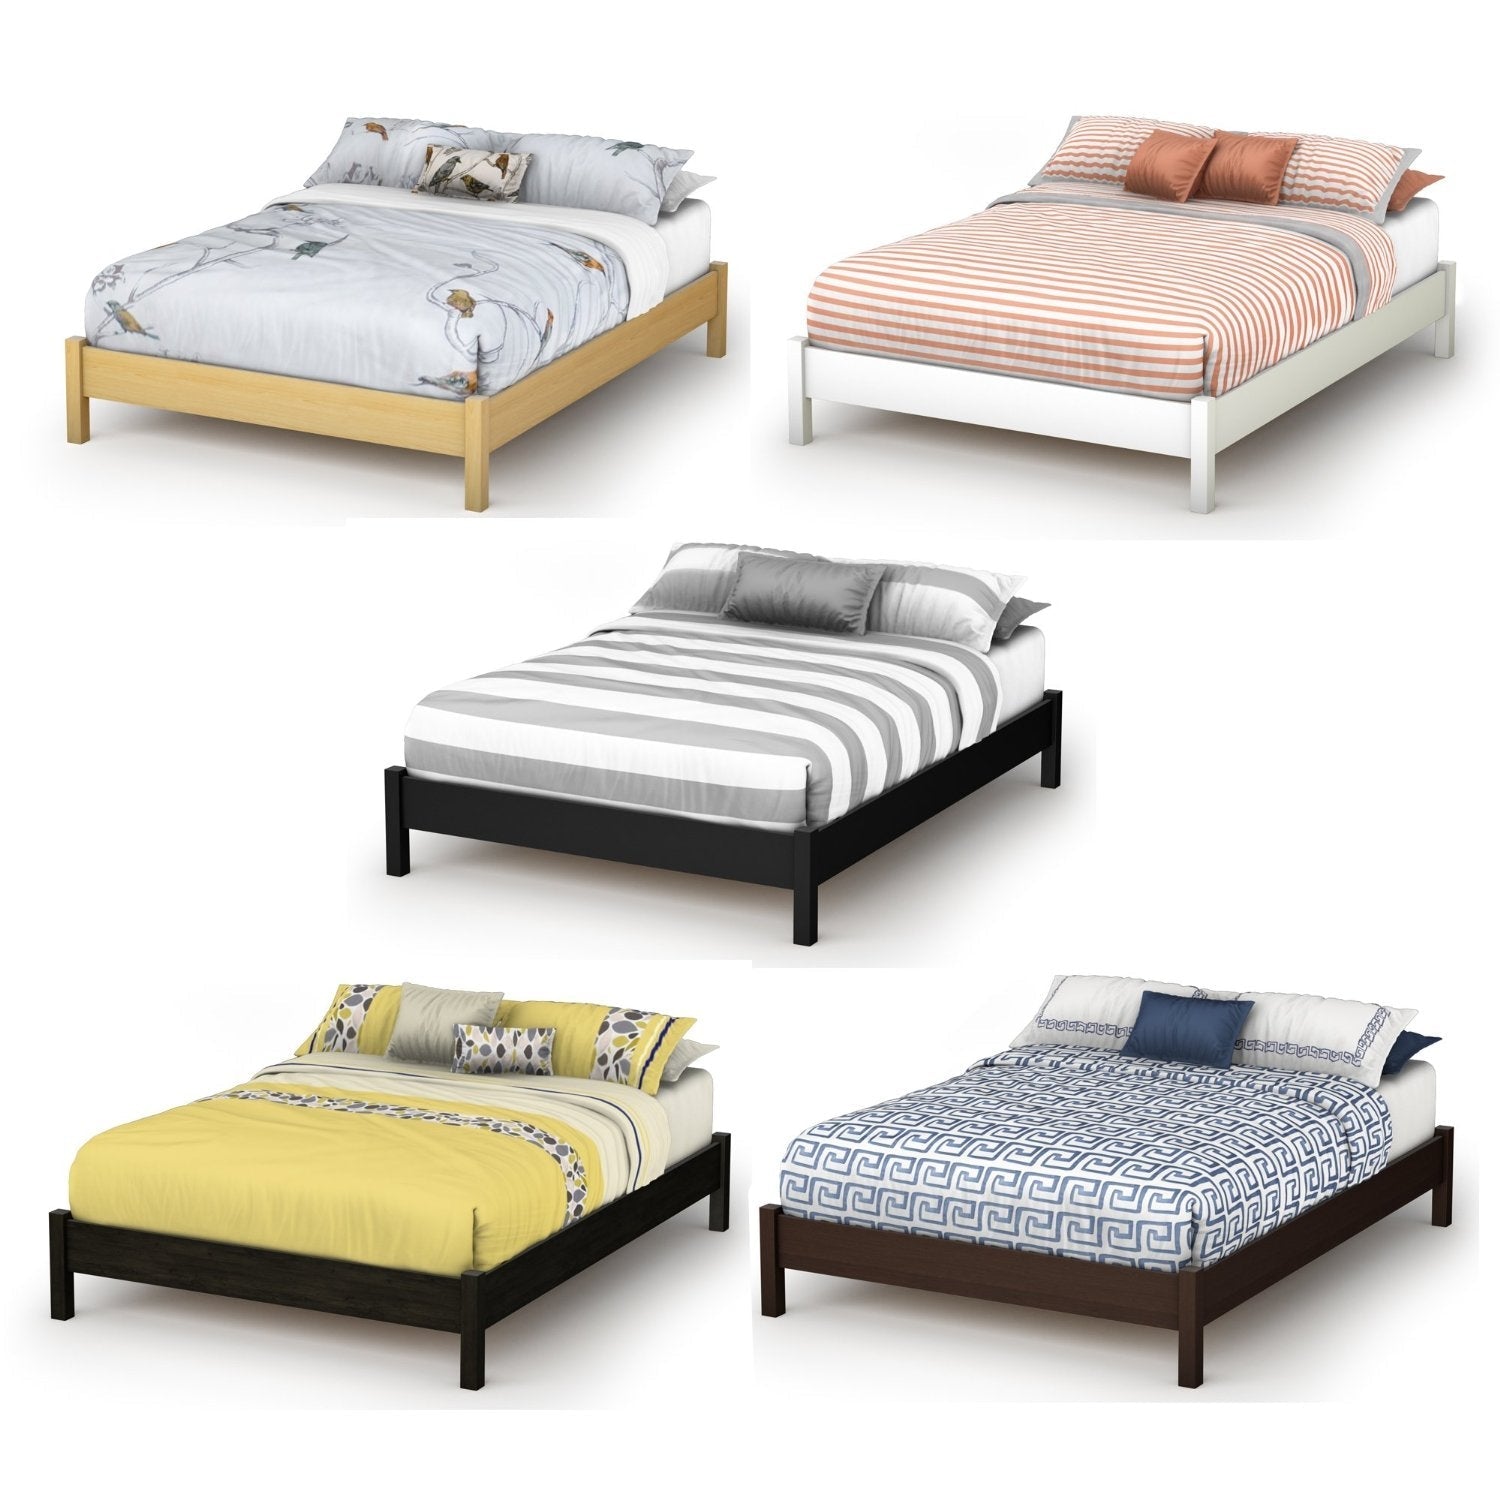 Bedroom > Bed Frames > Platform Beds - Full Size Simple Platform Bed In White Finish - Modern Design